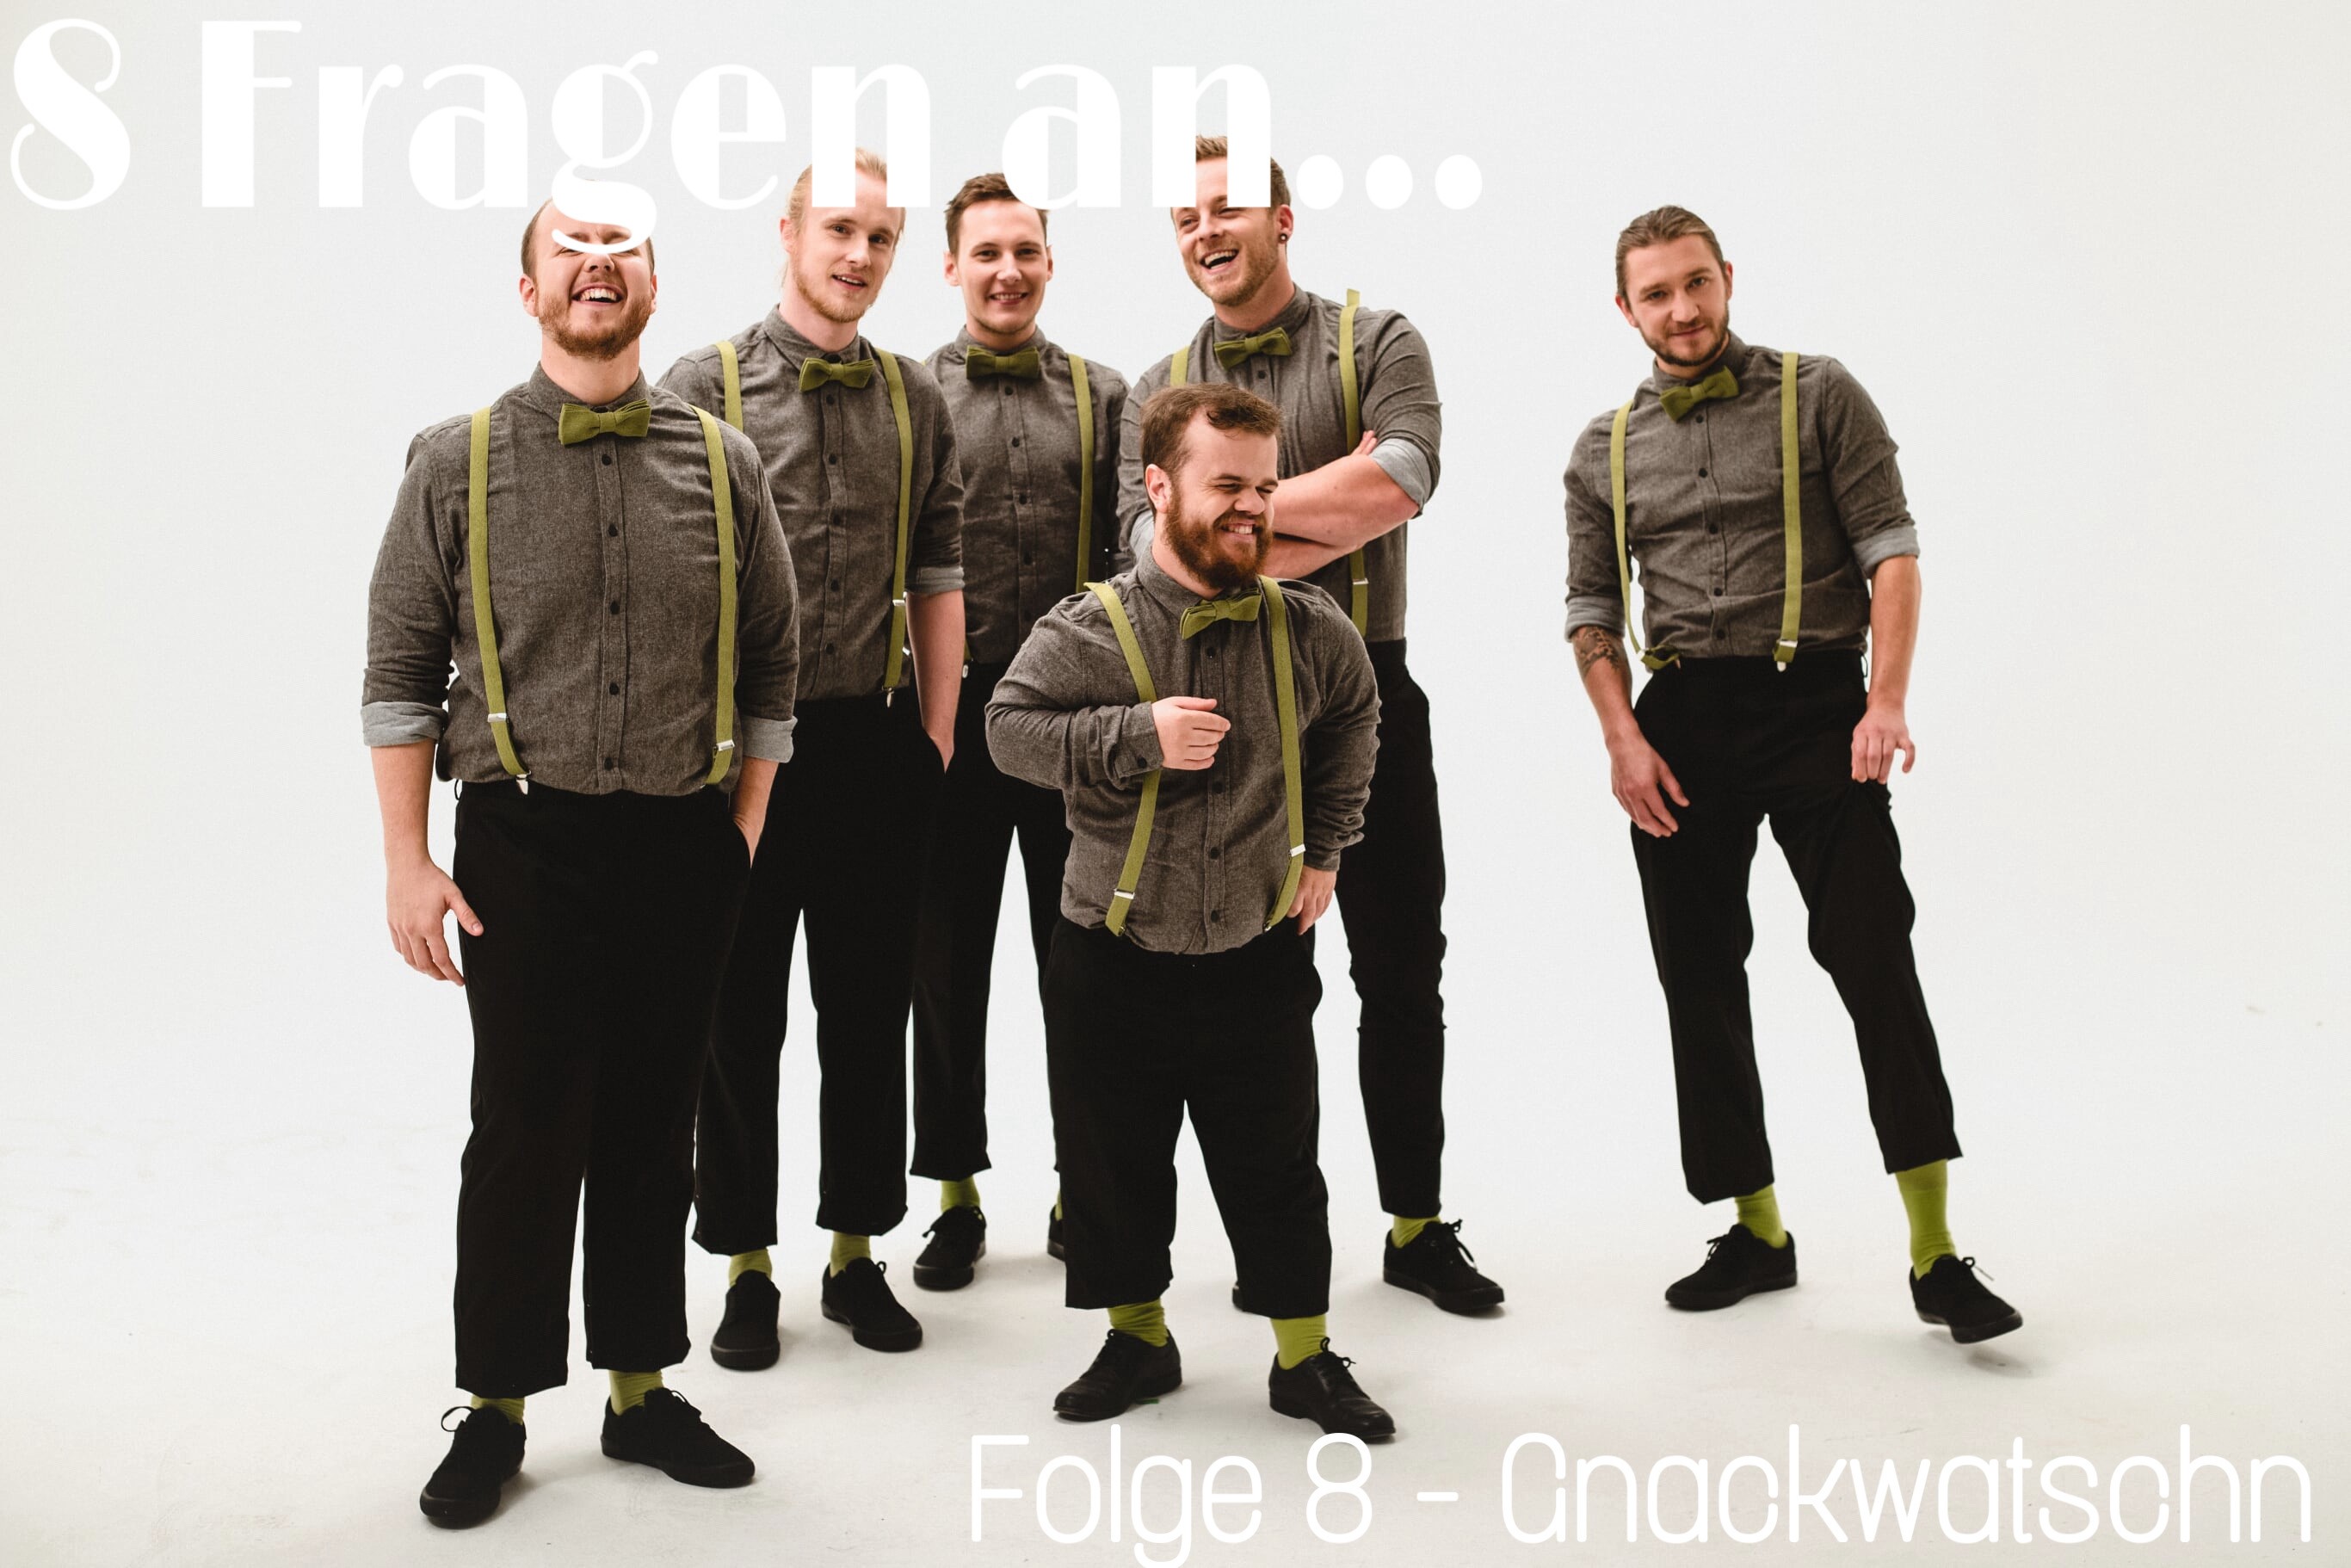 Das ist ein Foto der Band Gnackwatschn, auf dem die gesamten sechs Mitglieder abgebildet sind.